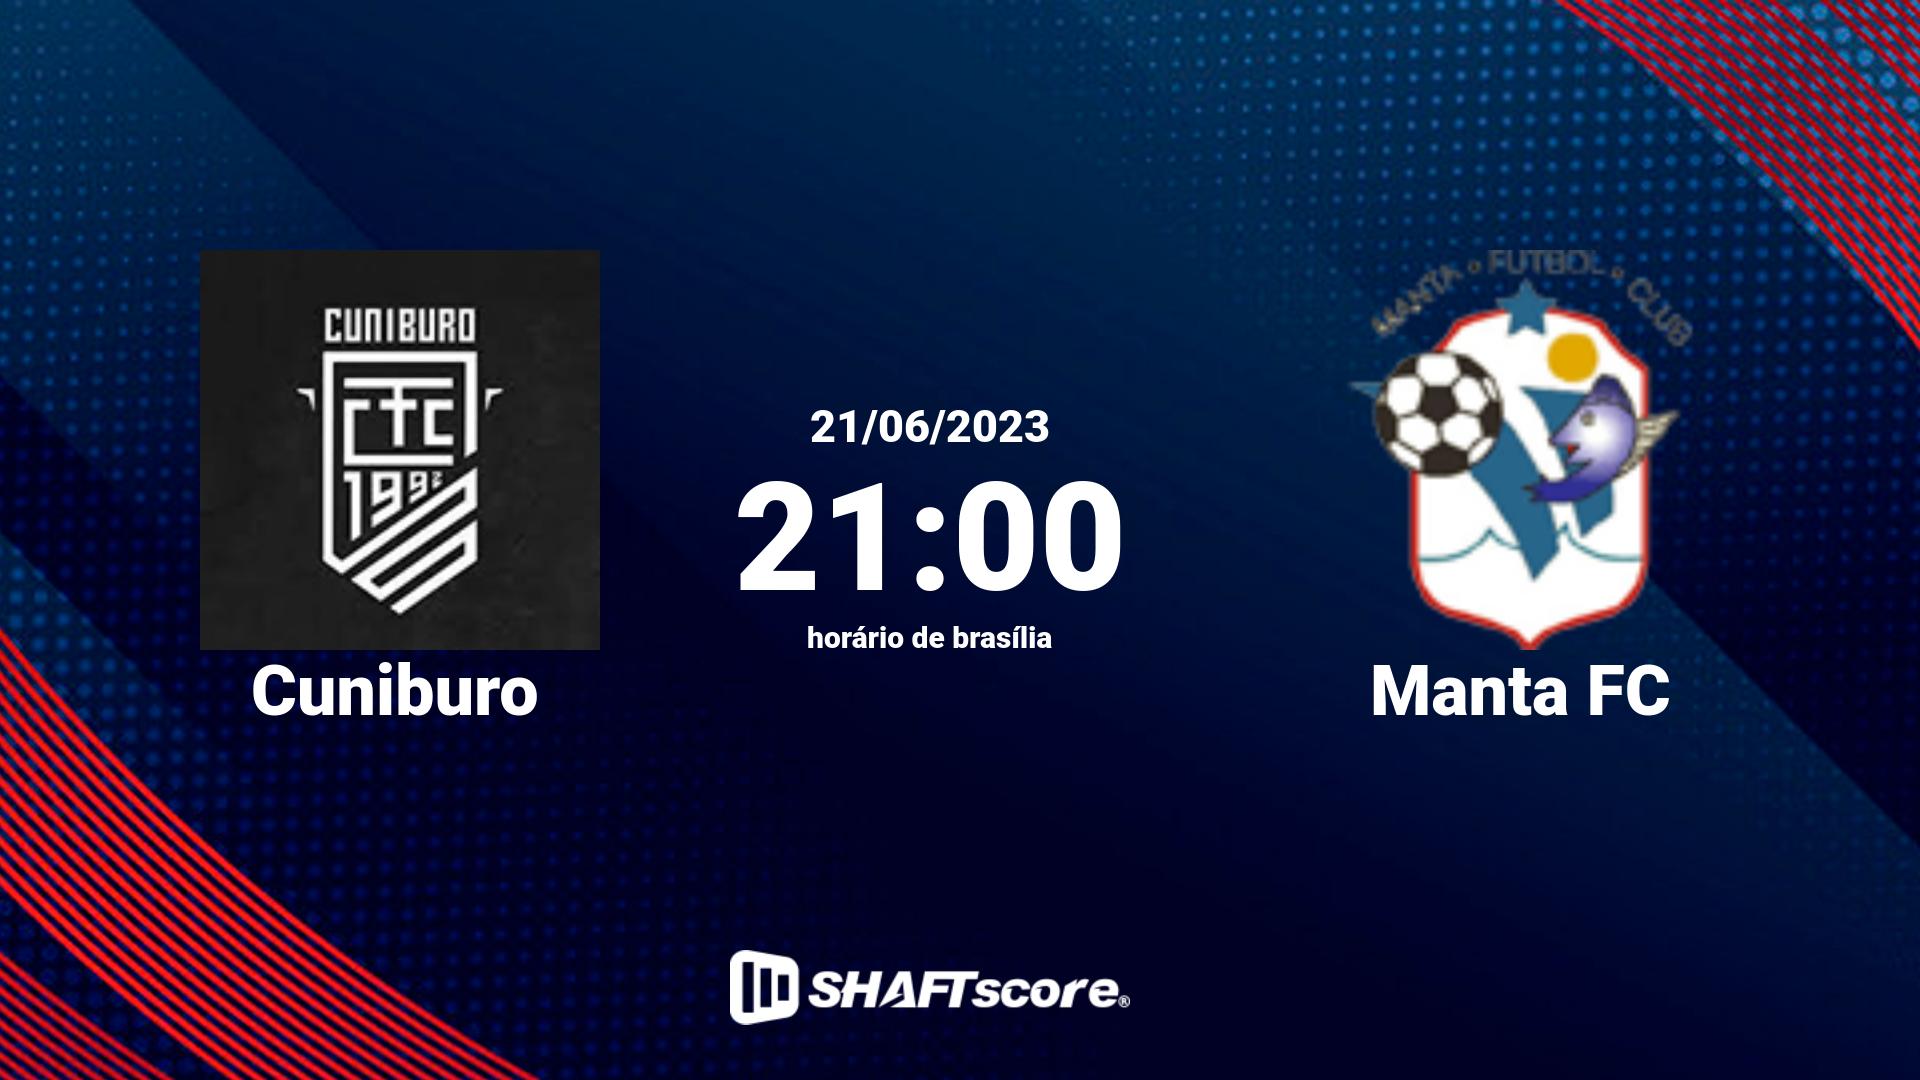 Estatísticas do jogo Cuniburo vs Manta FC 21.06 21:00